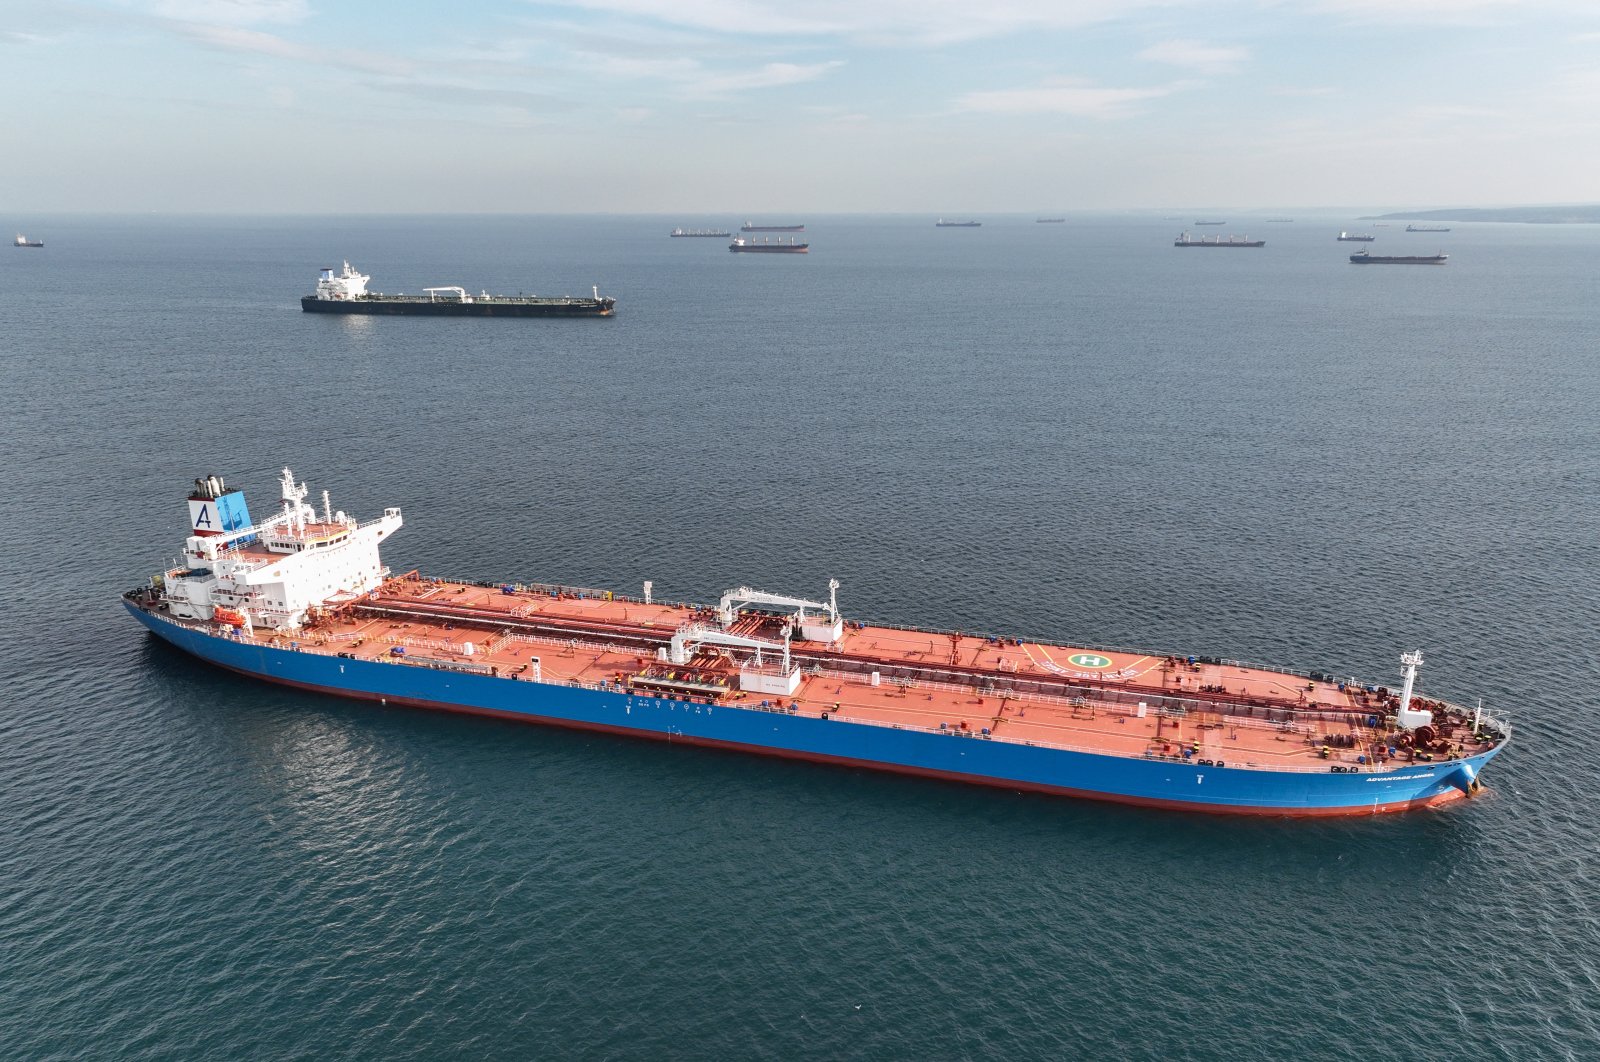 Türkiye bersumpah untuk menjaga kapal tanker minyak yang tidak memiliki asuransi keluar dari perairannya